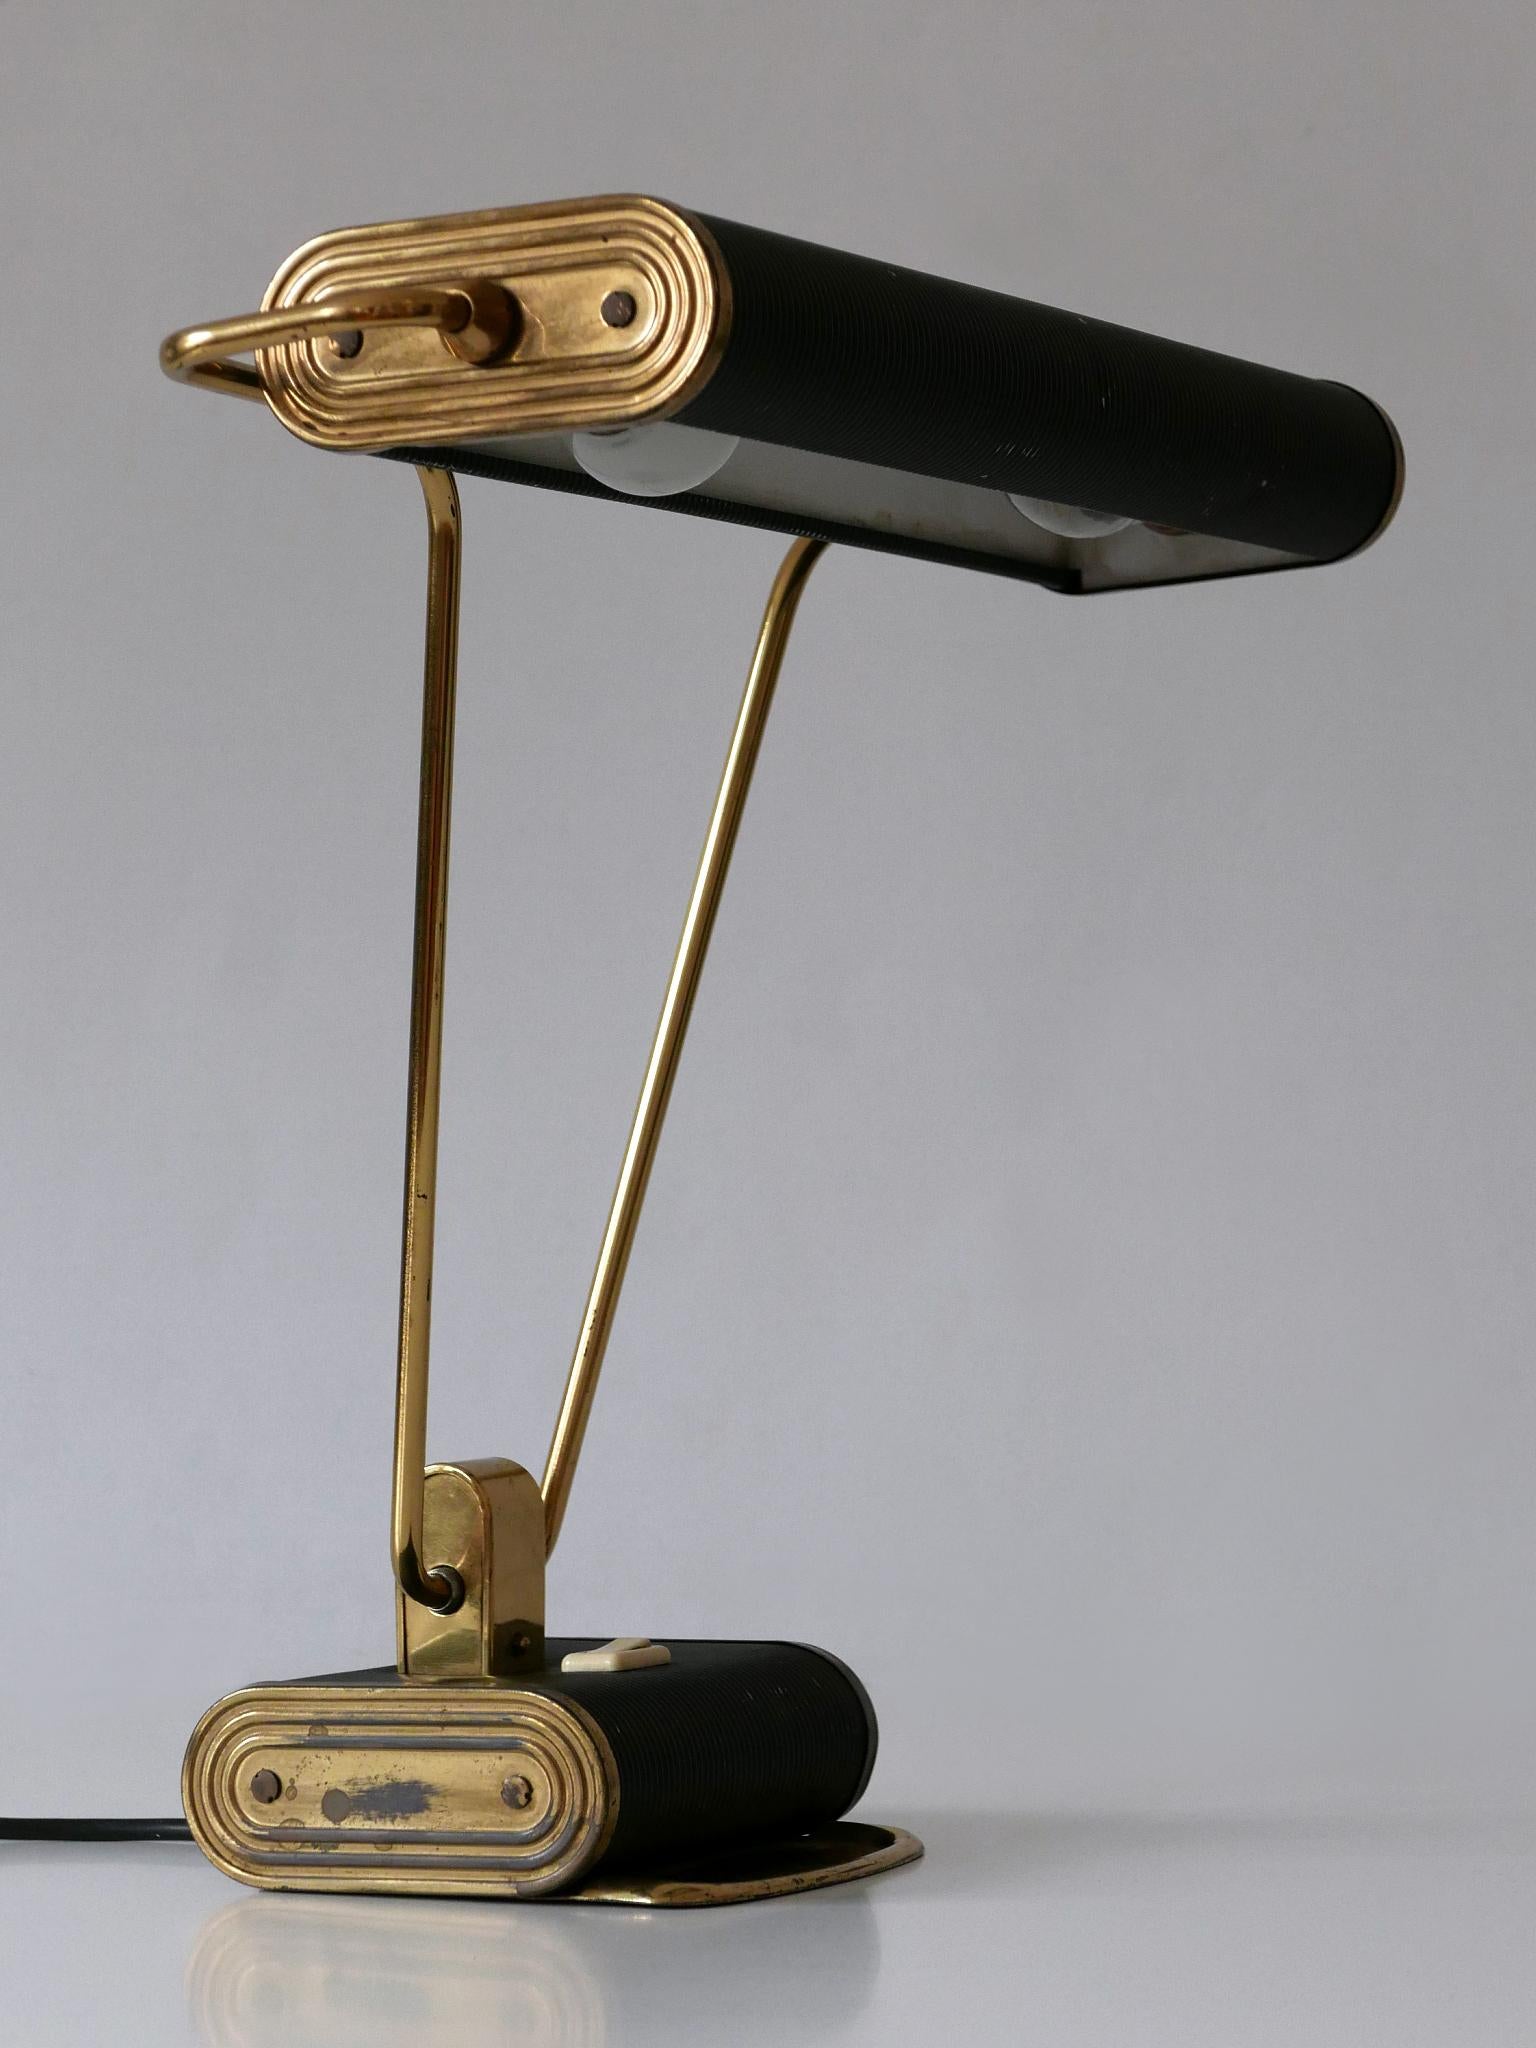 Elegante Art-Déco-Tischlampe oder Schreibtischleuchte Nr. 71. Lampenschirm drehbar. Entworfen von André Mounique für Jumo, Frankreich, 1930er Jahre.

Insgesamt 5 Lampen in zwei Farben erhältlich!
Dies ist die Nummer 1 der fünf Schreibtischleuchten.